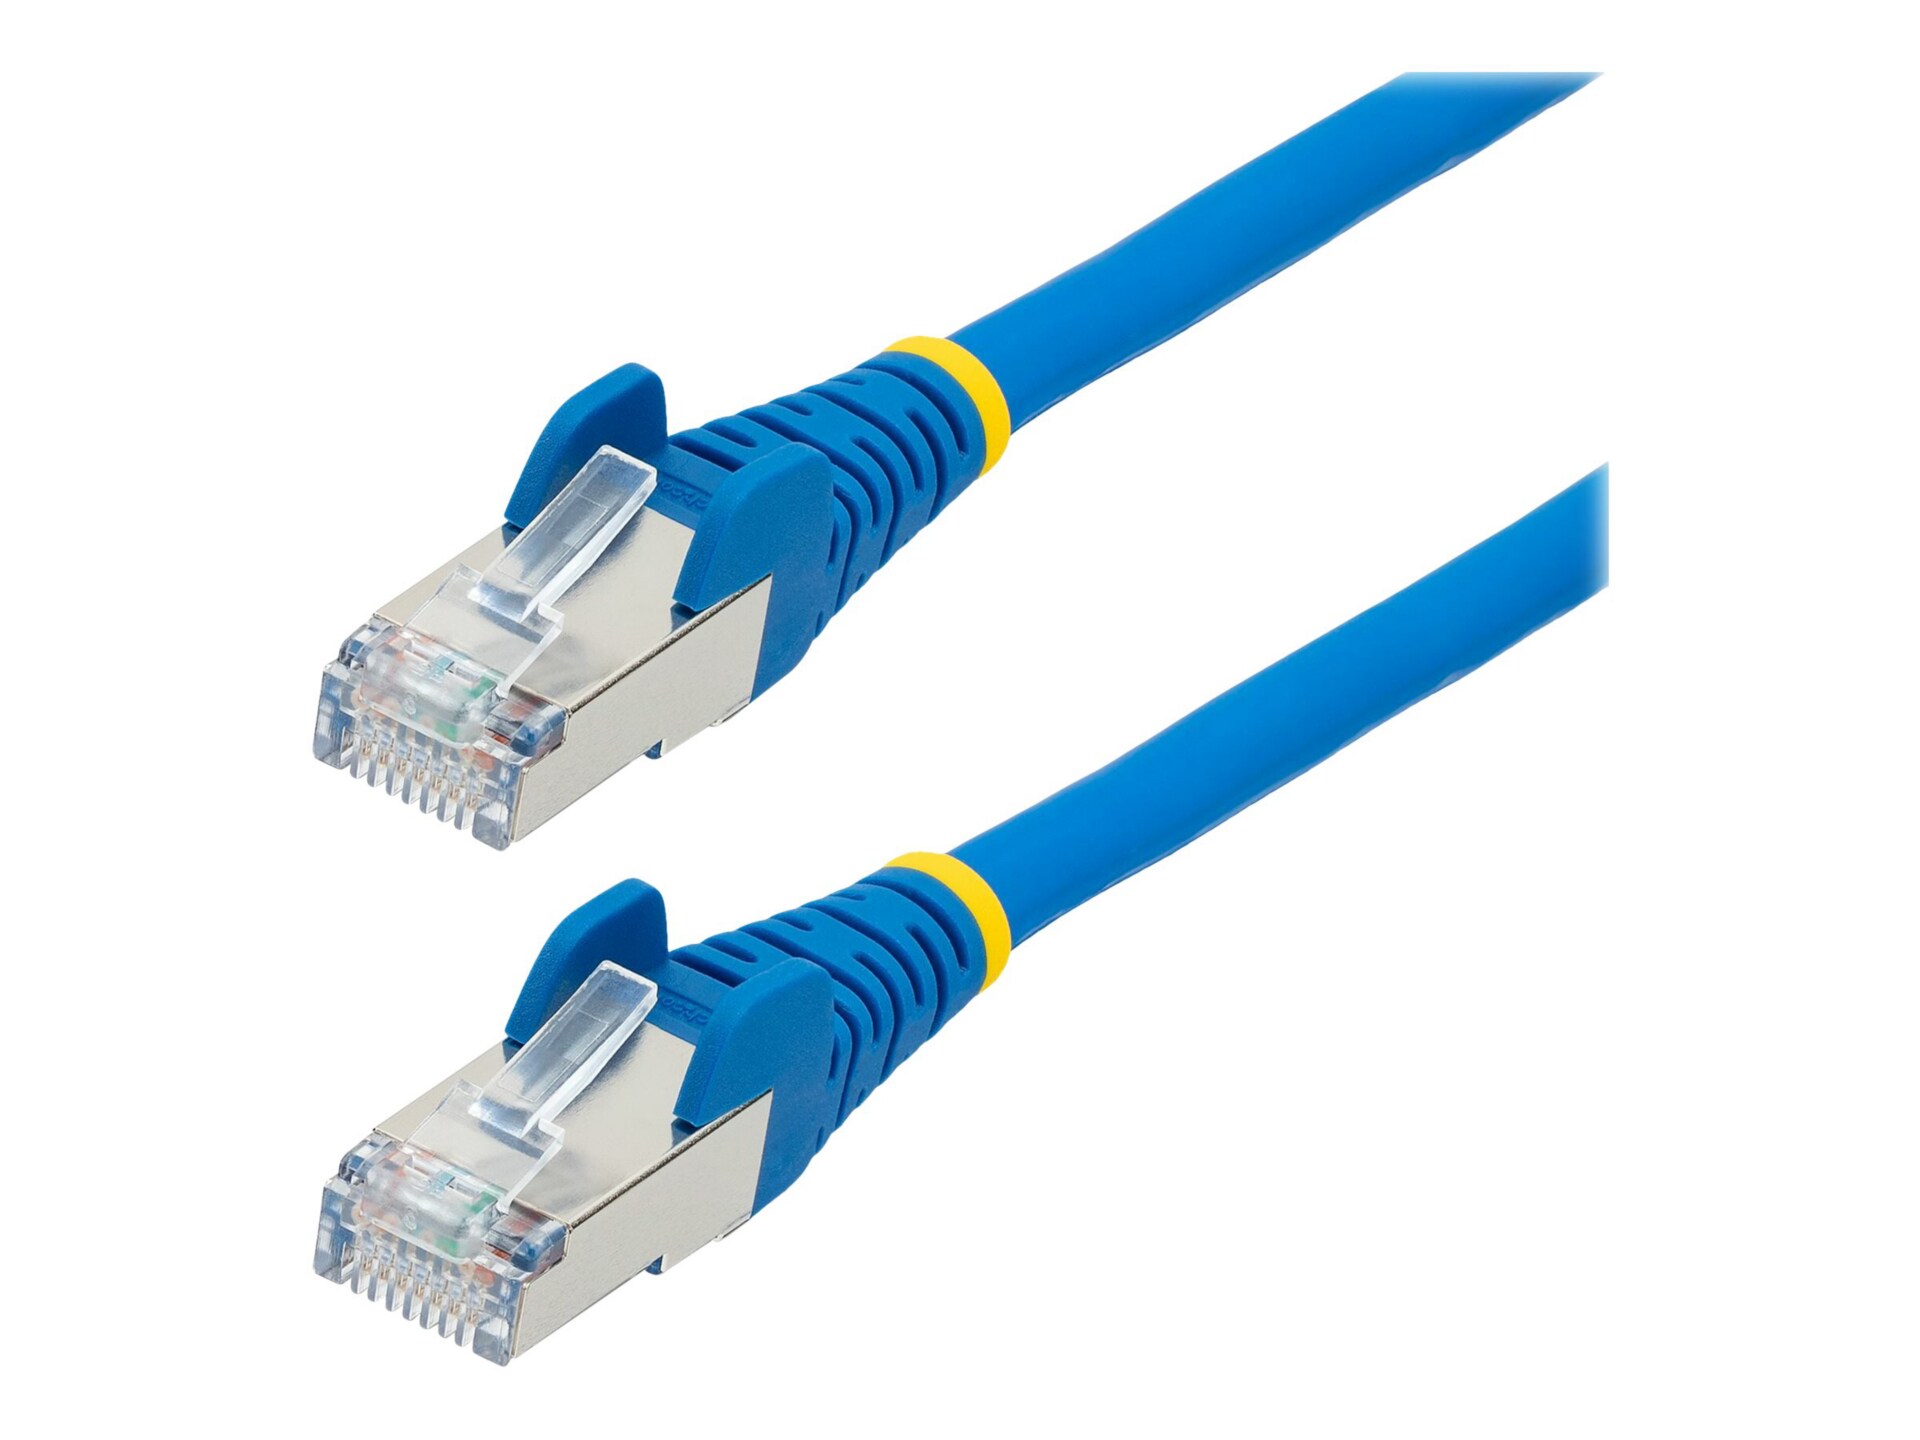 StarTech.com 20ft CAT6a Ethernet Cable, Blue Low Smoke Zero Halogen (LSZH)